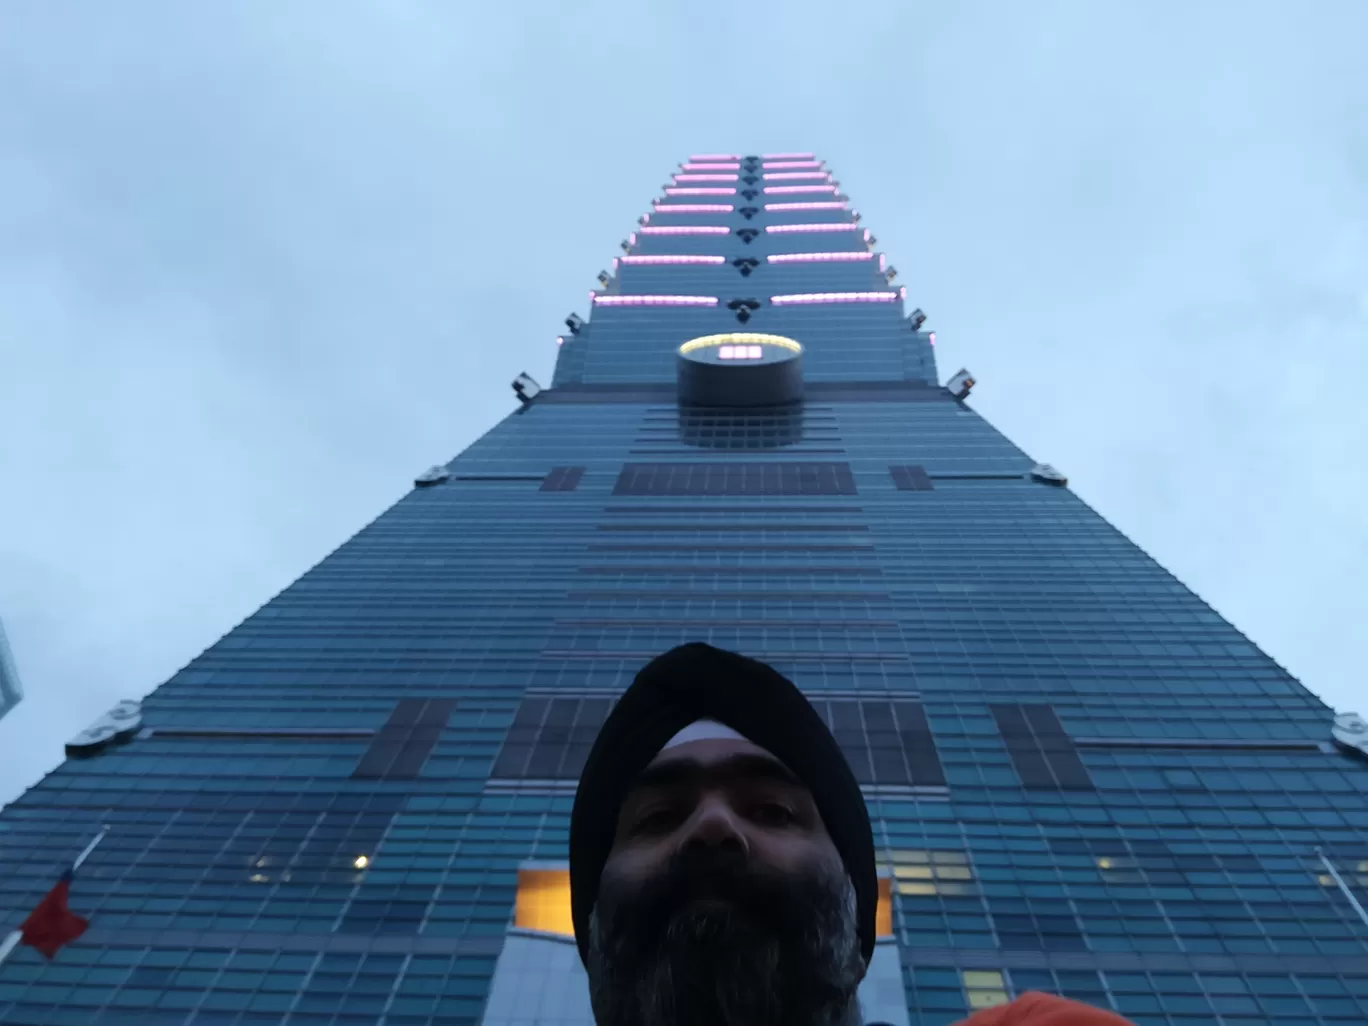 Photo of Taipei 101 By Charandeep Singh